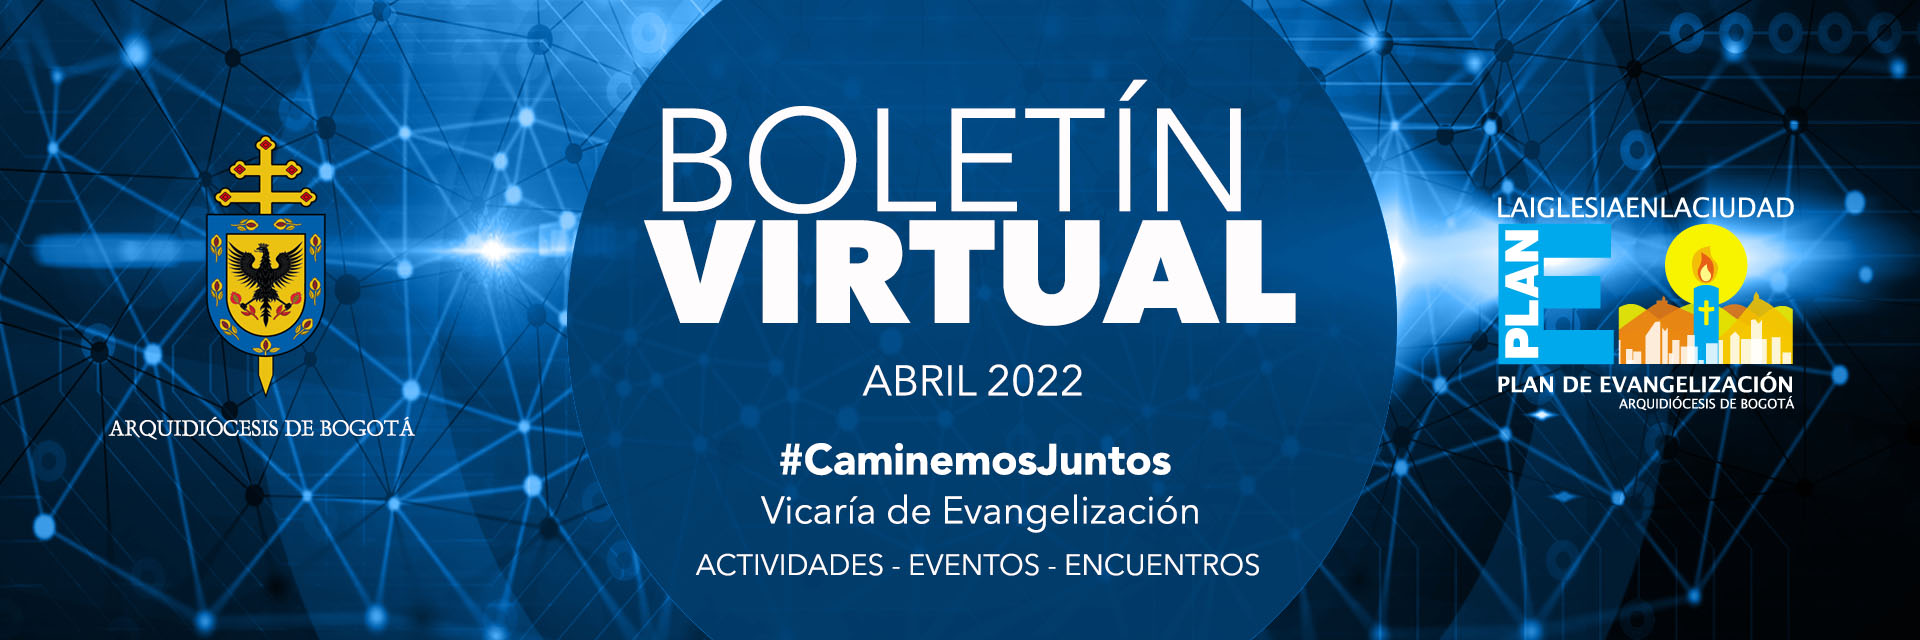 Banner BOletin virtual mes abril 2022